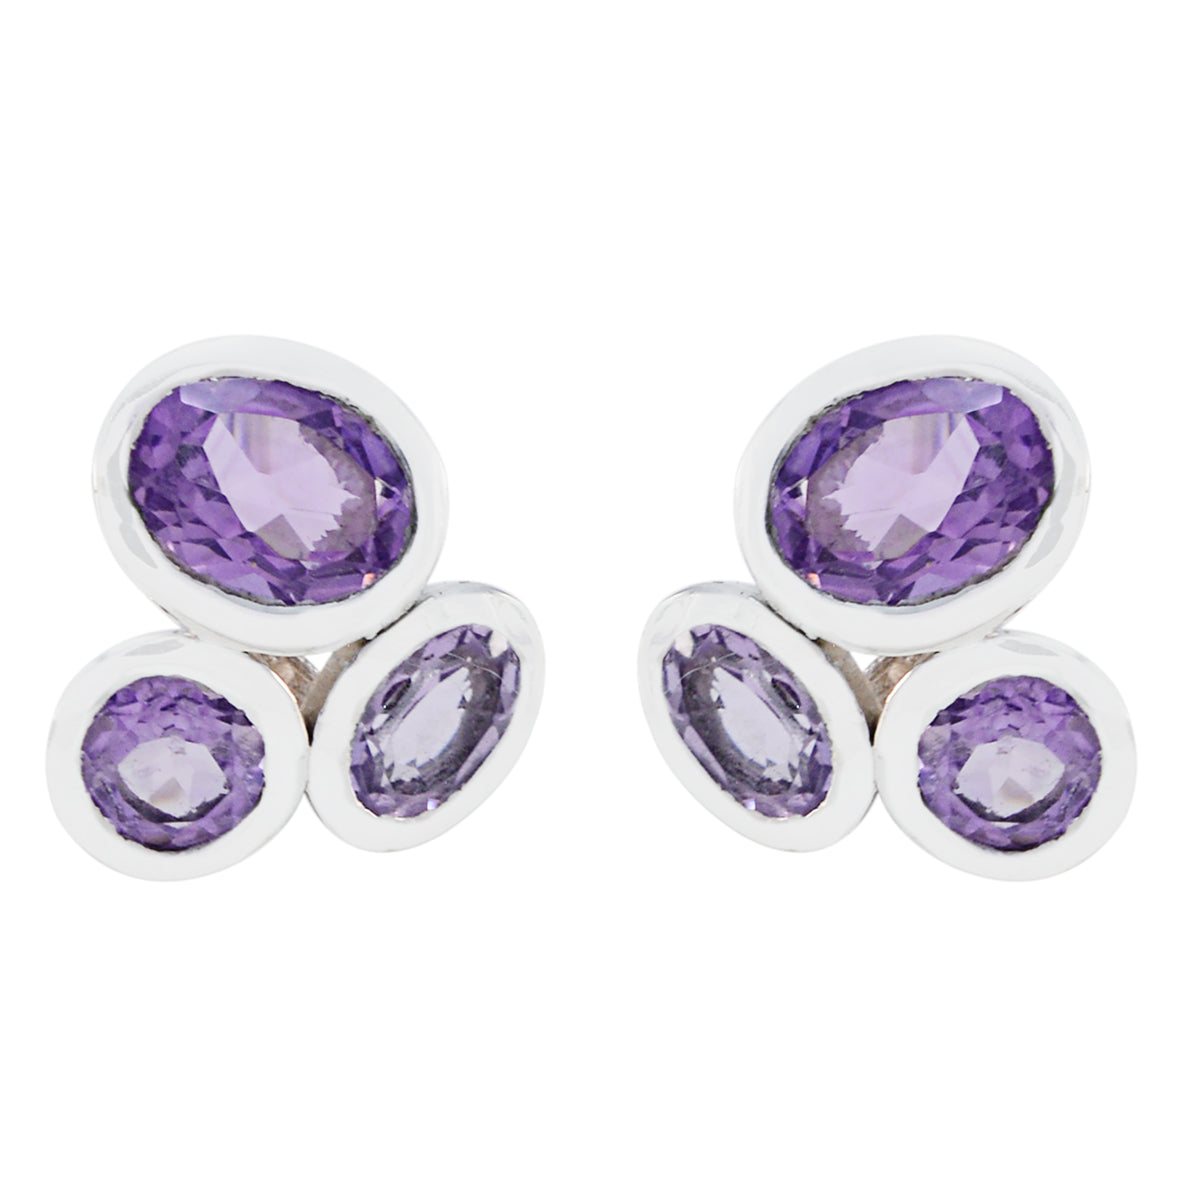 Riyo Real Gemstones multi shape Faceted Purple Amethyst Silver Earrings mother gift